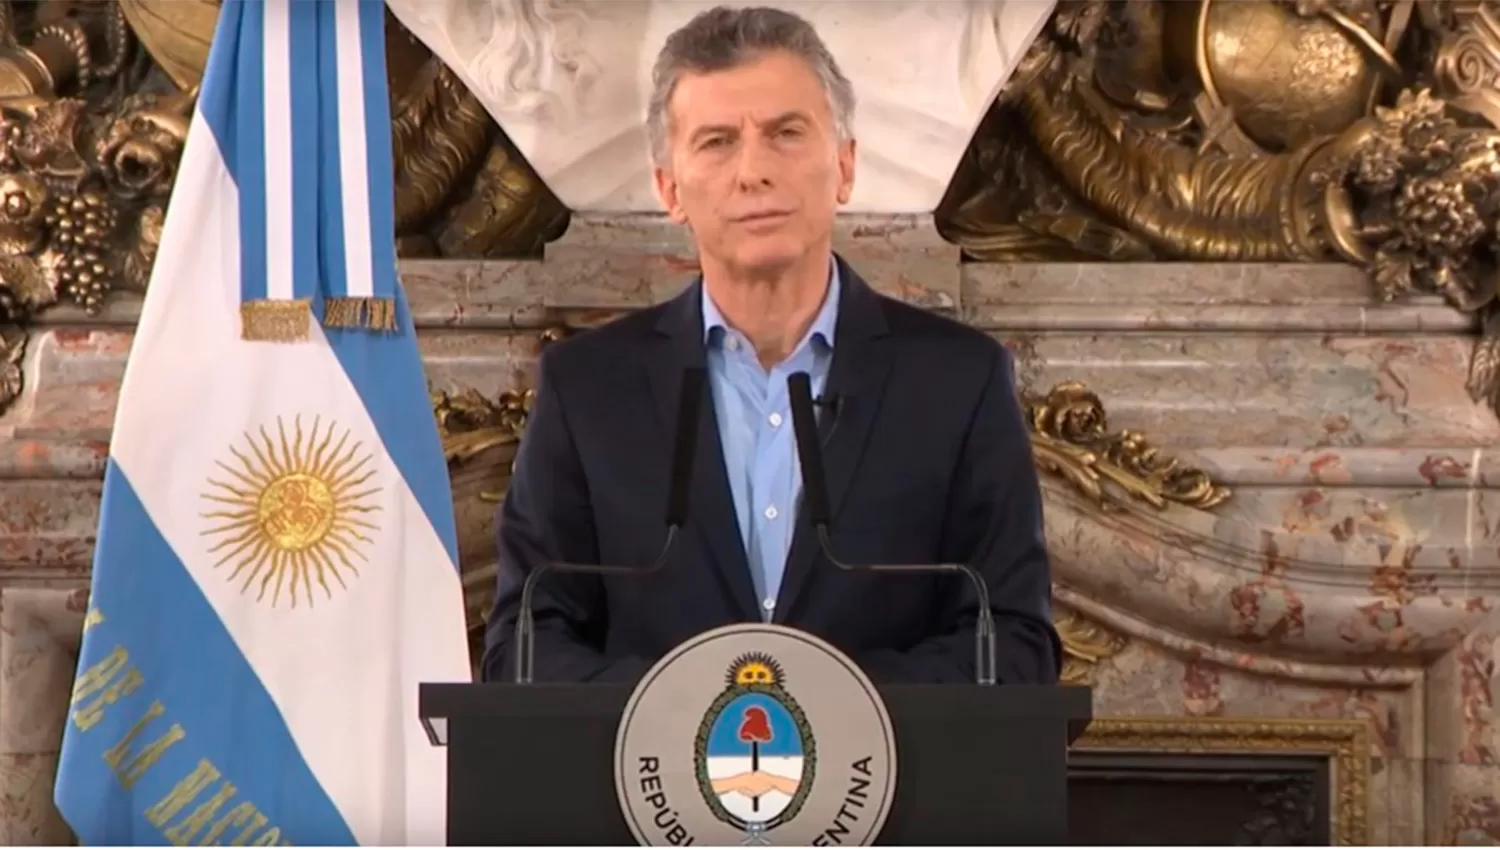 Vamos a ir hasta las últimas consecuencias para encontrar a los culpables, dijo Macri